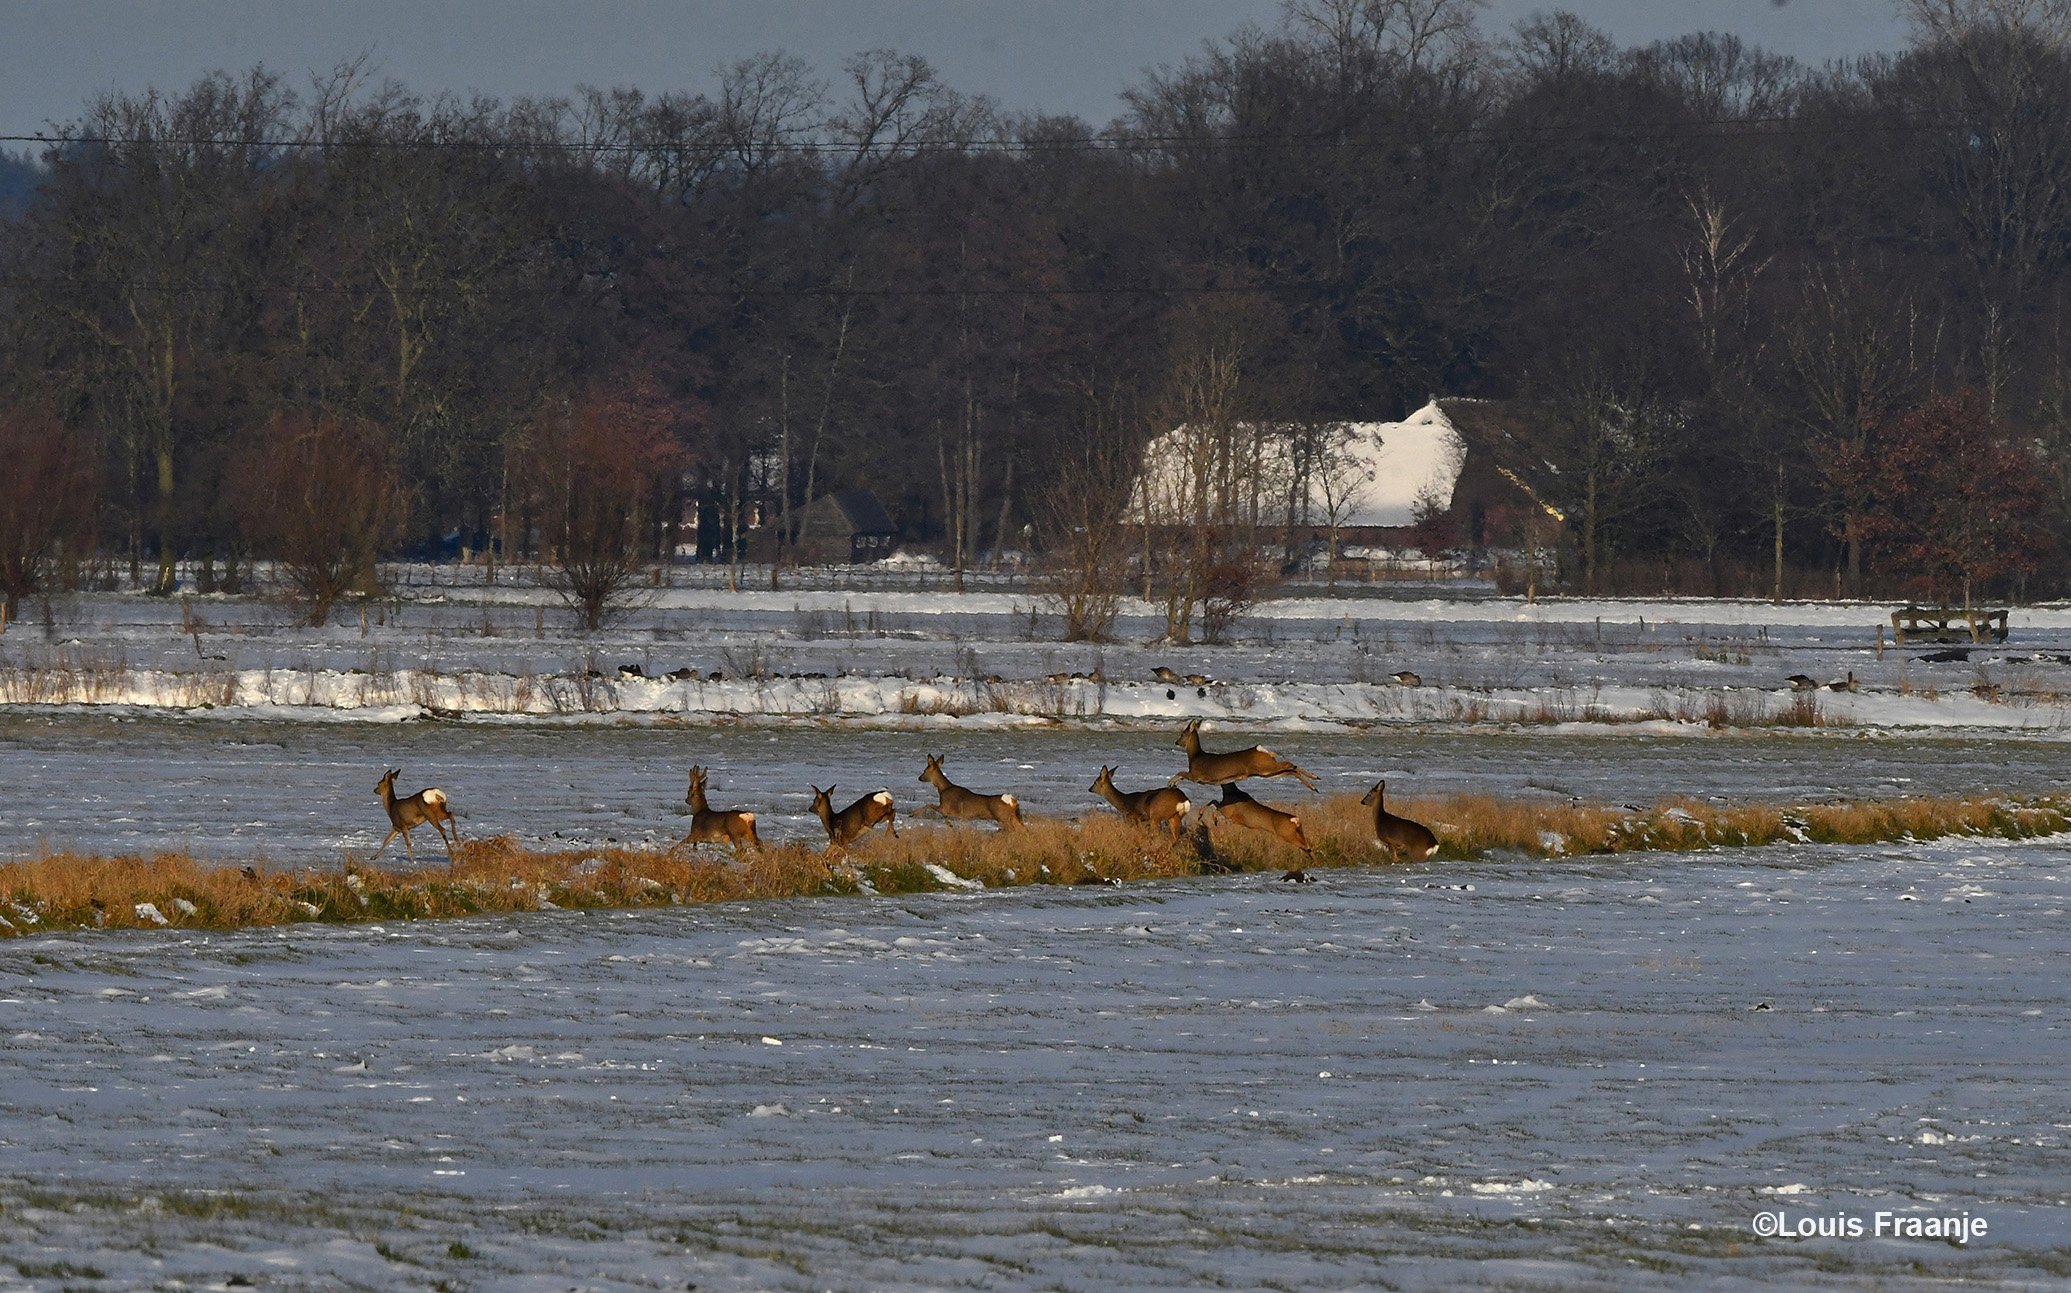 Ver weg achter in het veld, zie ik een aantal reeën die zich snel verplaatsten door de besneeuwde weilanden - Foto: ©Louis Fraanje